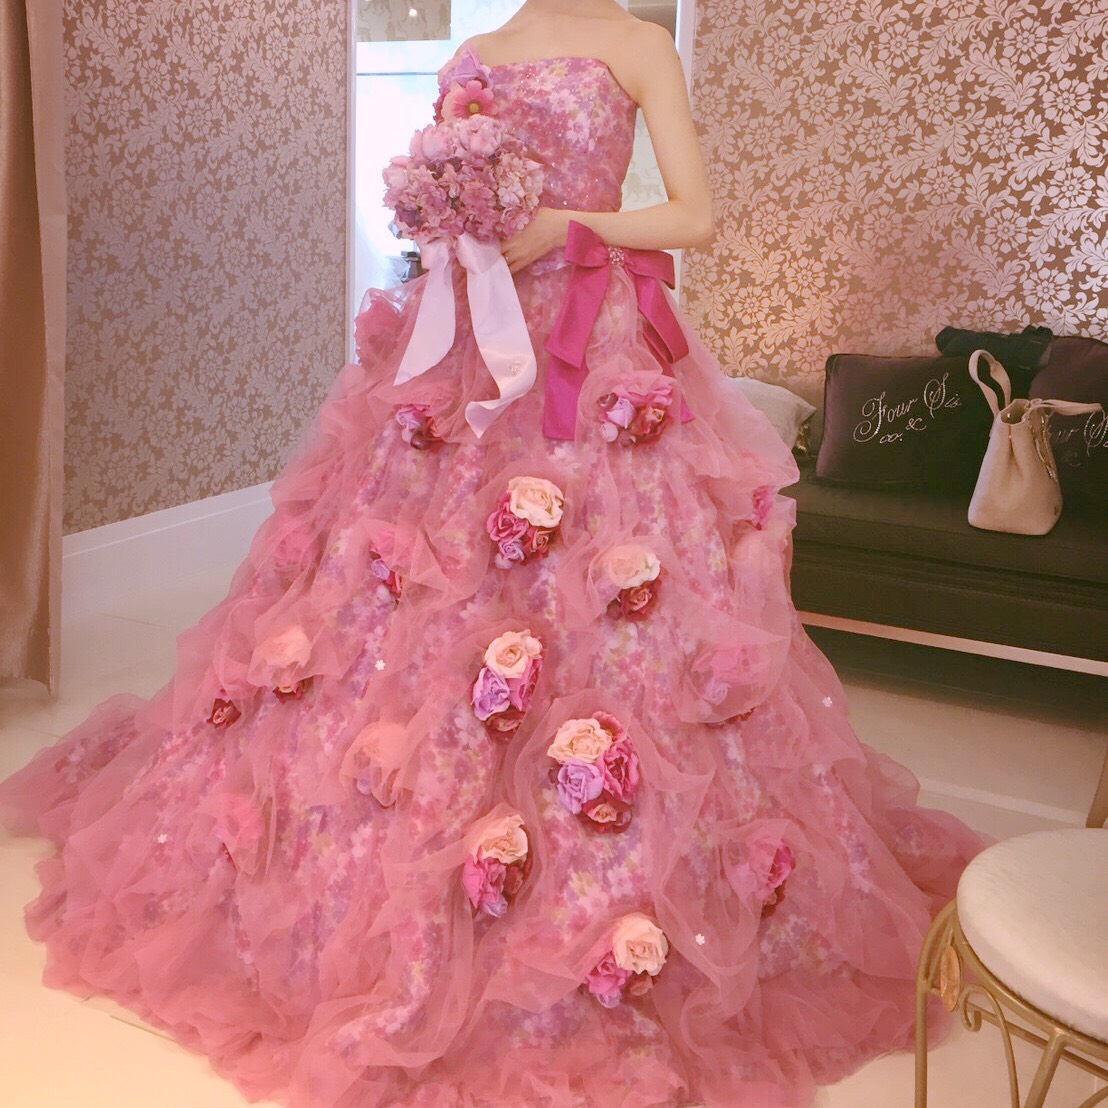 ピンクカラードレス試着レポ♡FOUR SIS & CO.でした運命のカラードレス